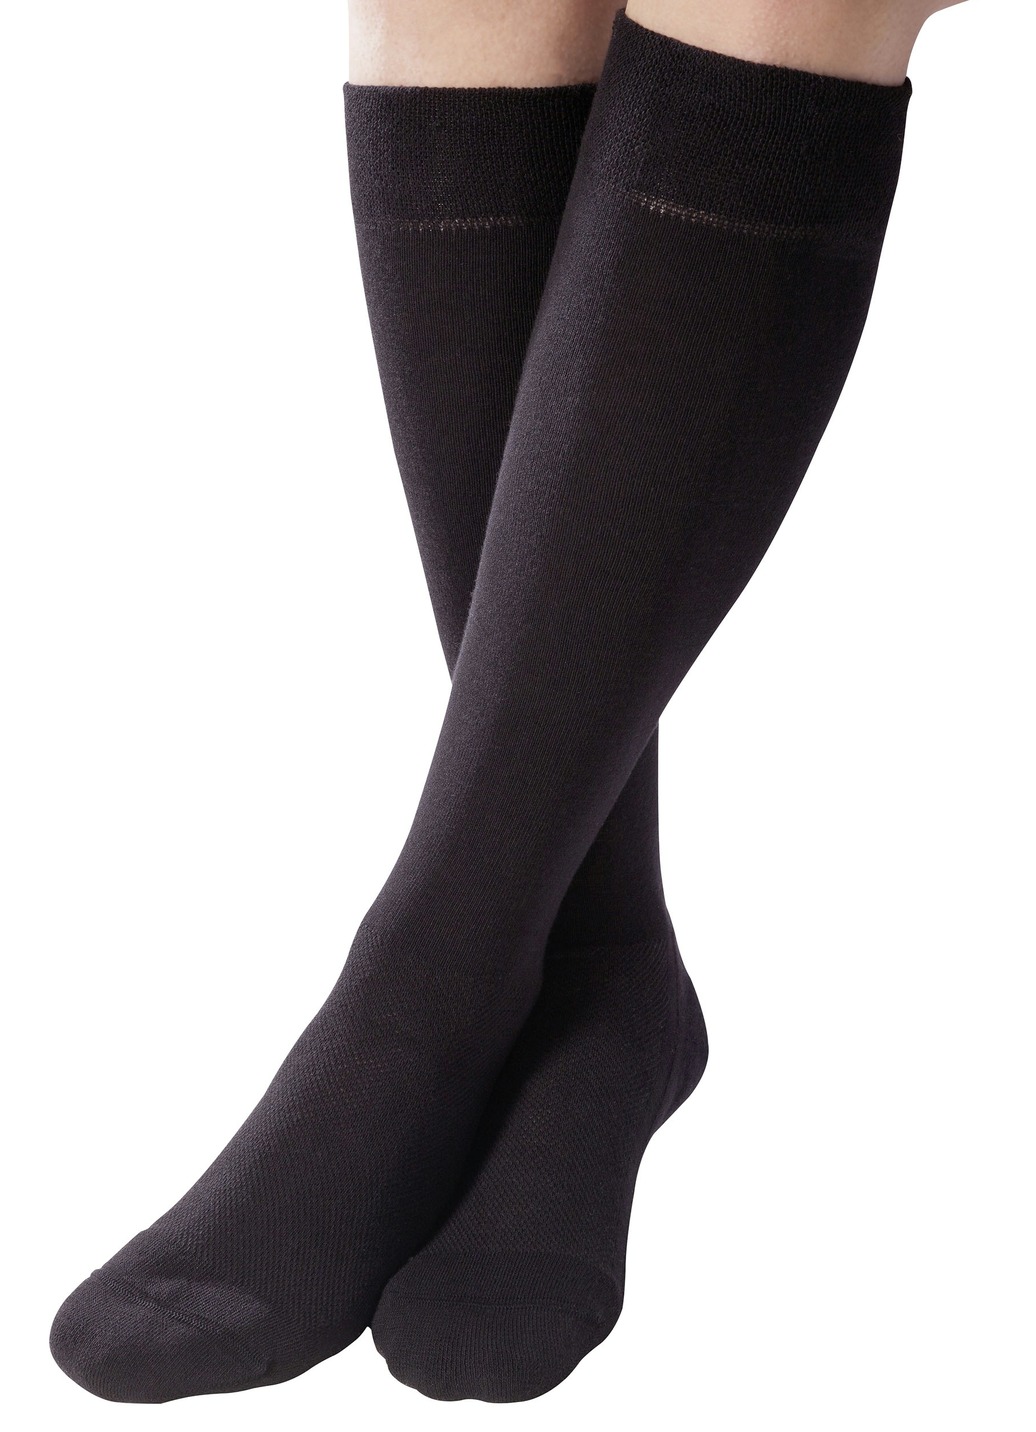 Gesundheitsstrümpfe - Zweierpack Komfort-Kniestrümpfe oder -Socken, in Größe 1 (37–39) bis 3 (43–45), in Farbe SCHWARZ, in Ausführung Zweierpack Komfort-Kniestrümpfe Ansicht 1